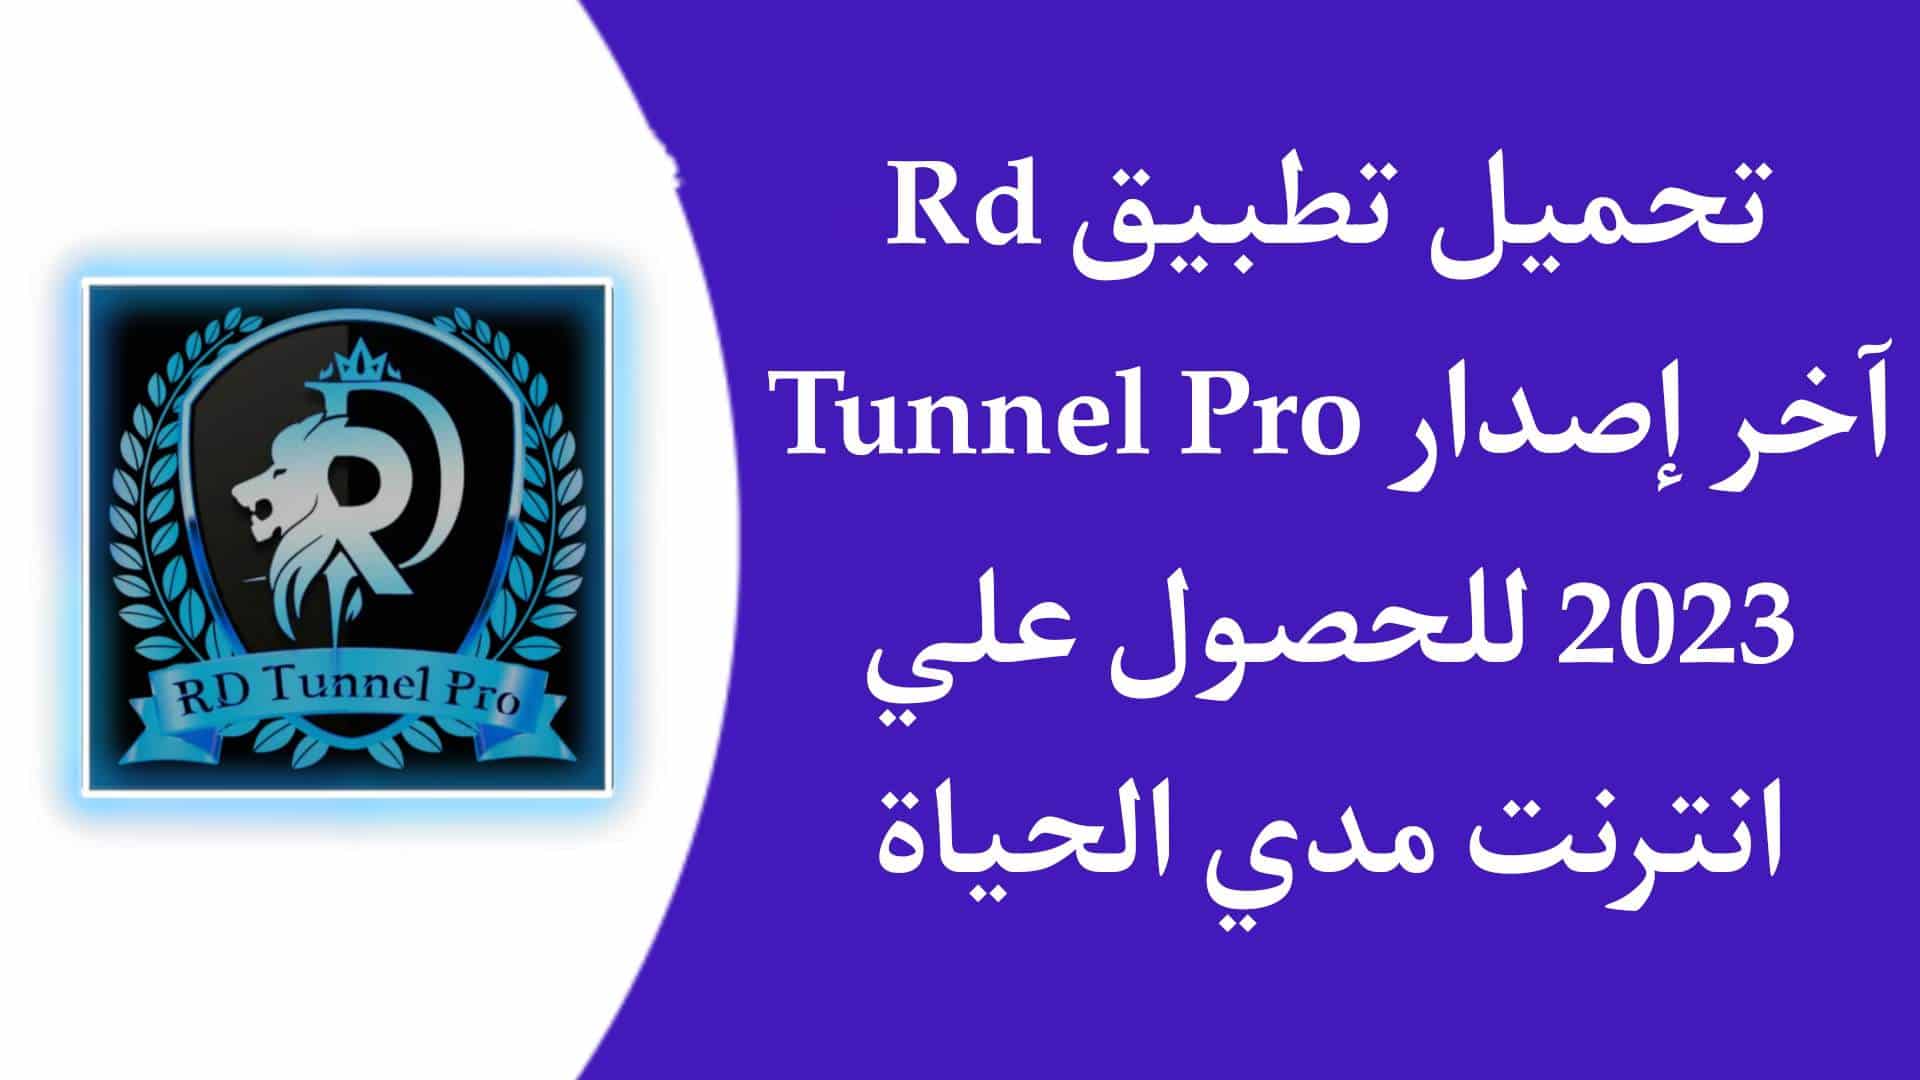 تحميل تطبيق RD Tunnel Pro للحصول علي انترنت مجاني مدي الحياة 1